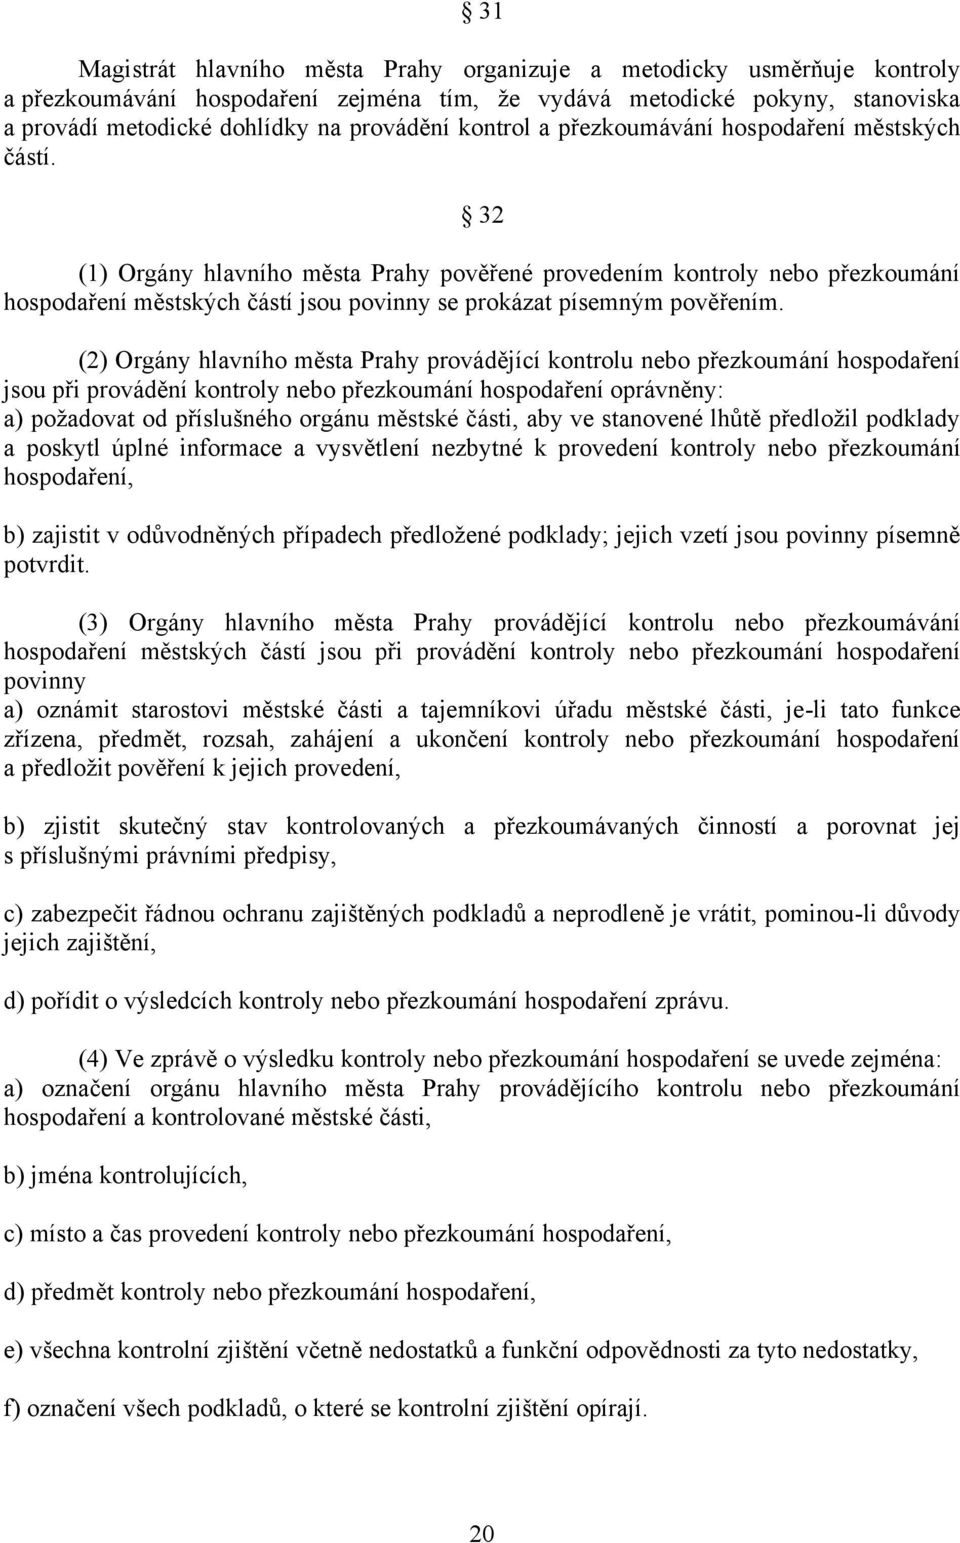 32 (1) Orgány hlavního města Prahy pověřené provedením kontroly nebo přezkoumání hospodaření městských částí jsou povinny se prokázat písemným pověřením.